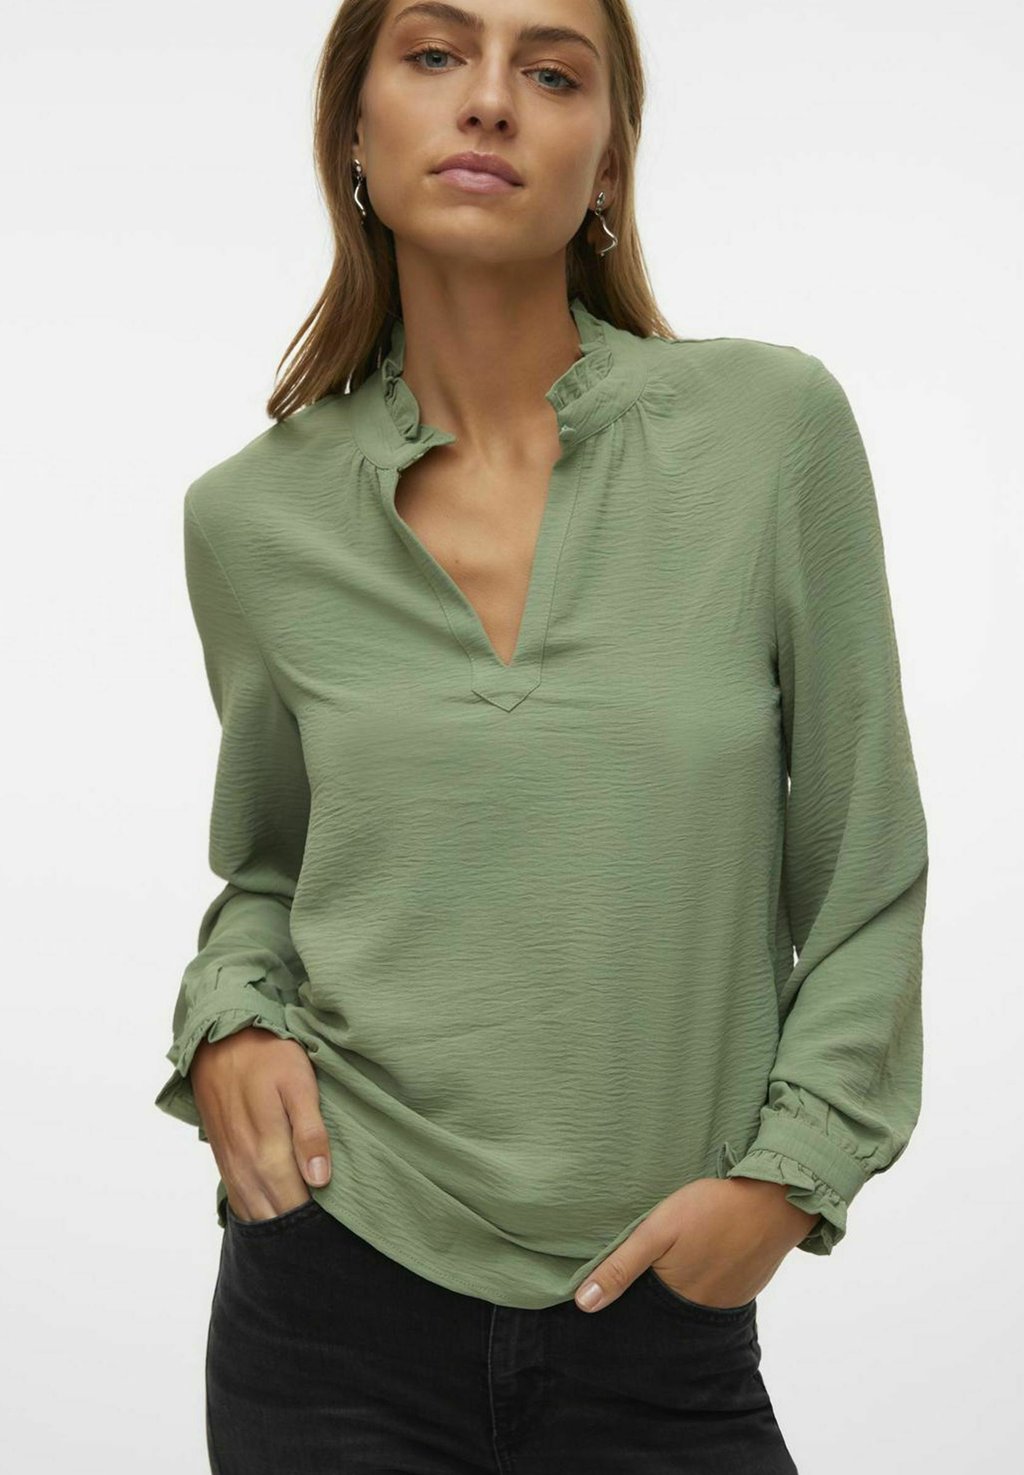 Блузка Vero Moda, зеленая изгородь блузка vero moda цвет hedge green